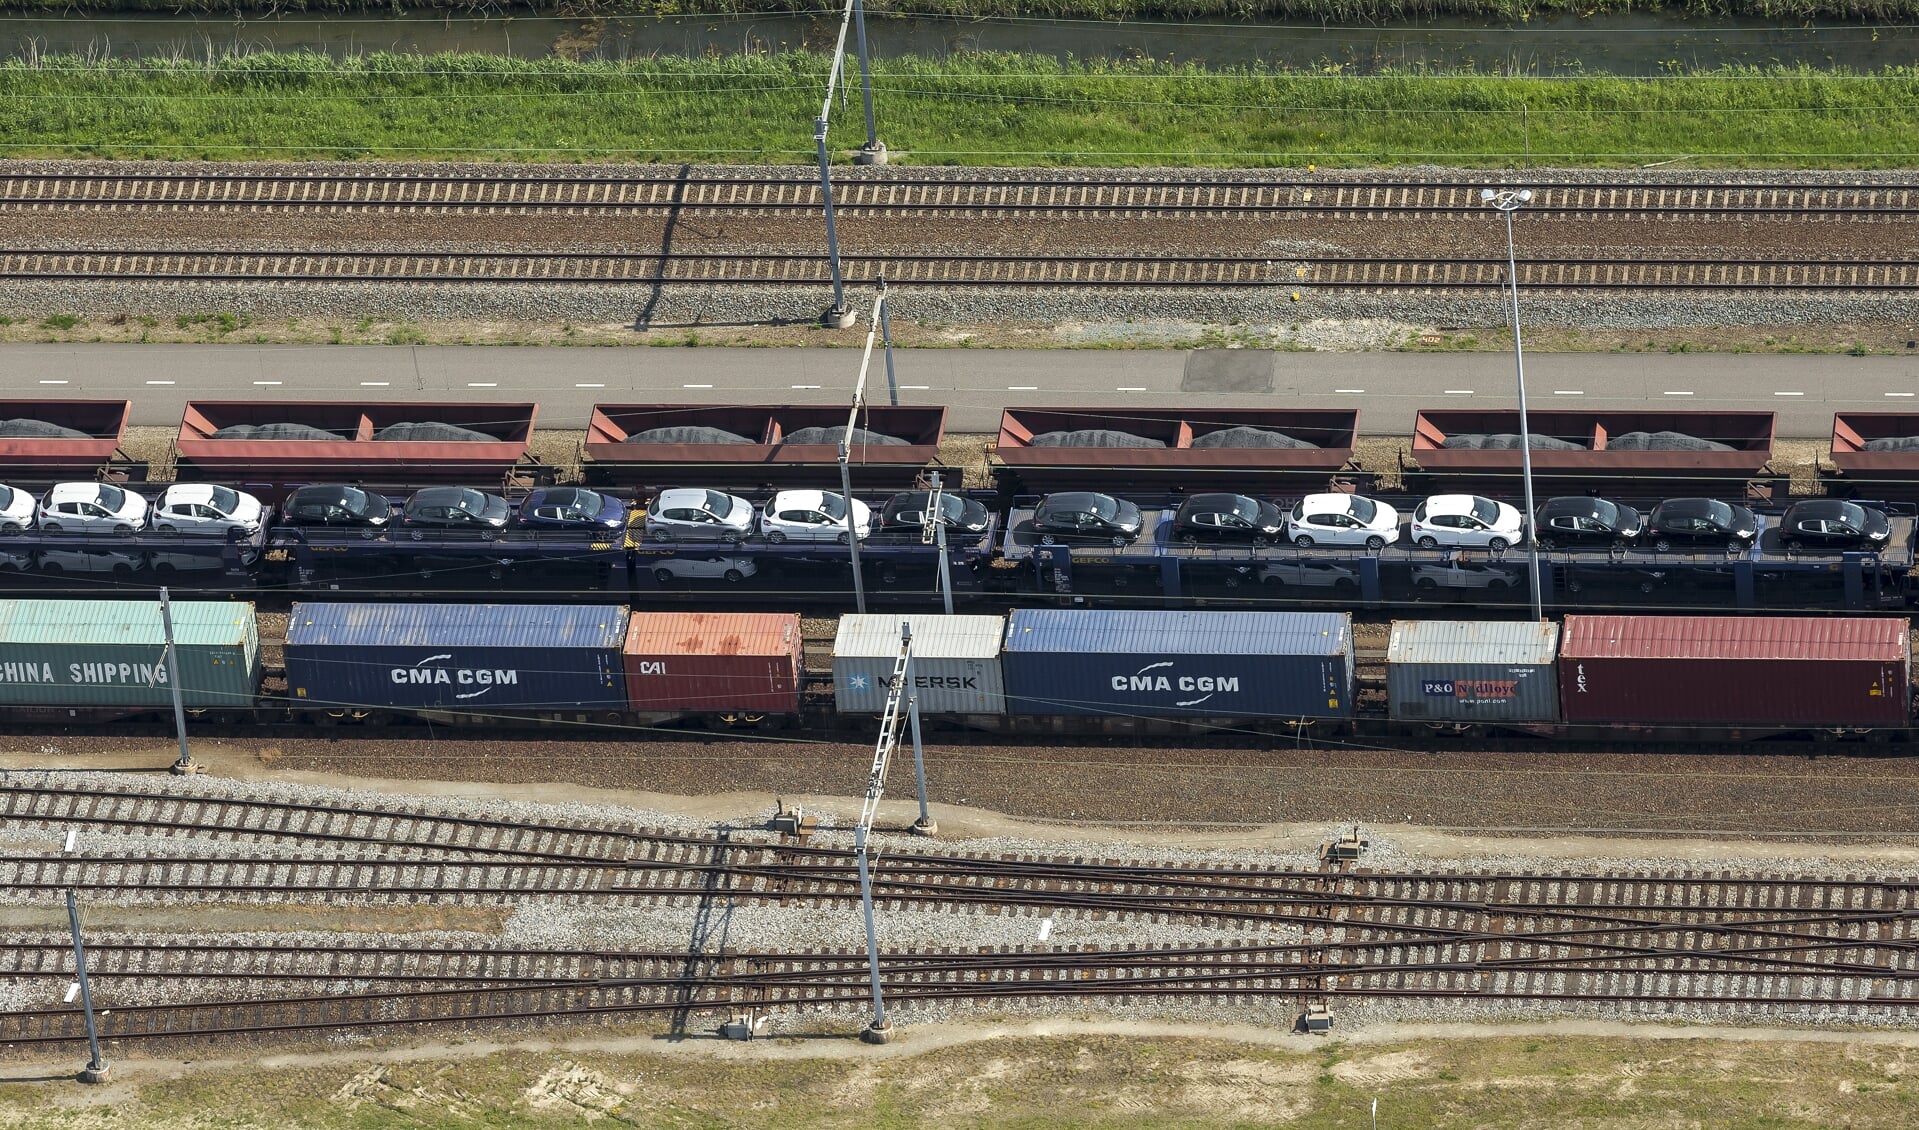 Er gaat inmiddels al ruim 40 miljoen ton vracht per jaar over het spoor. Met verdere groei in het vooruitzicht. Een zorgwekkende situatie voor inwoners die nu al overlast ervaren.